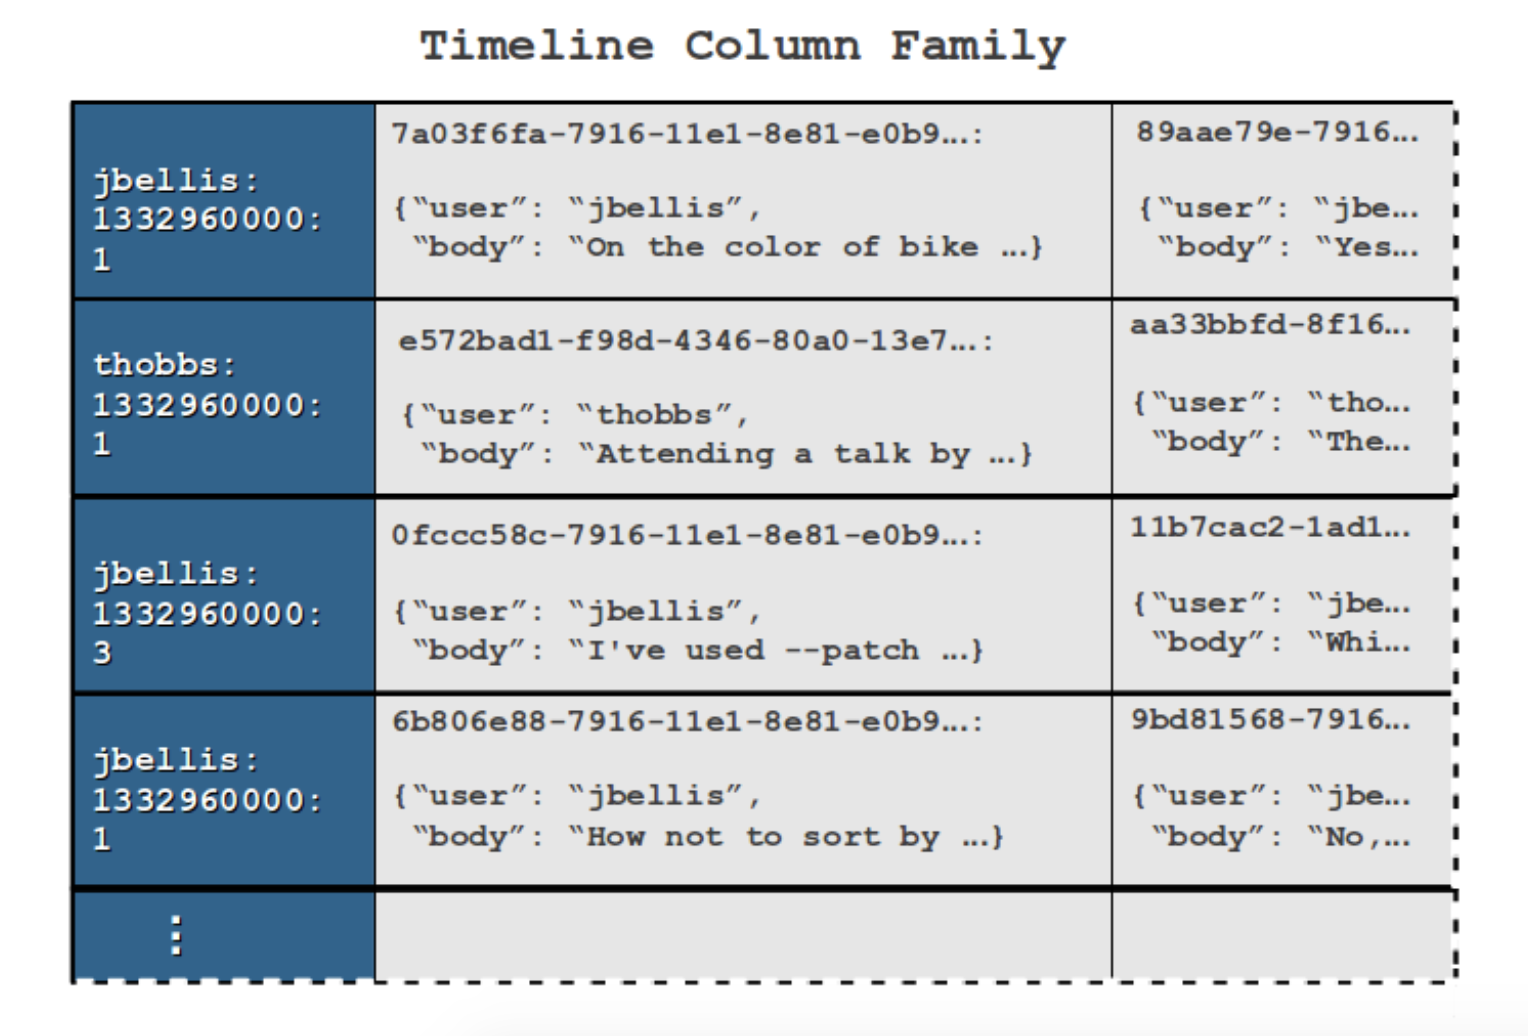 Timeline Column Family